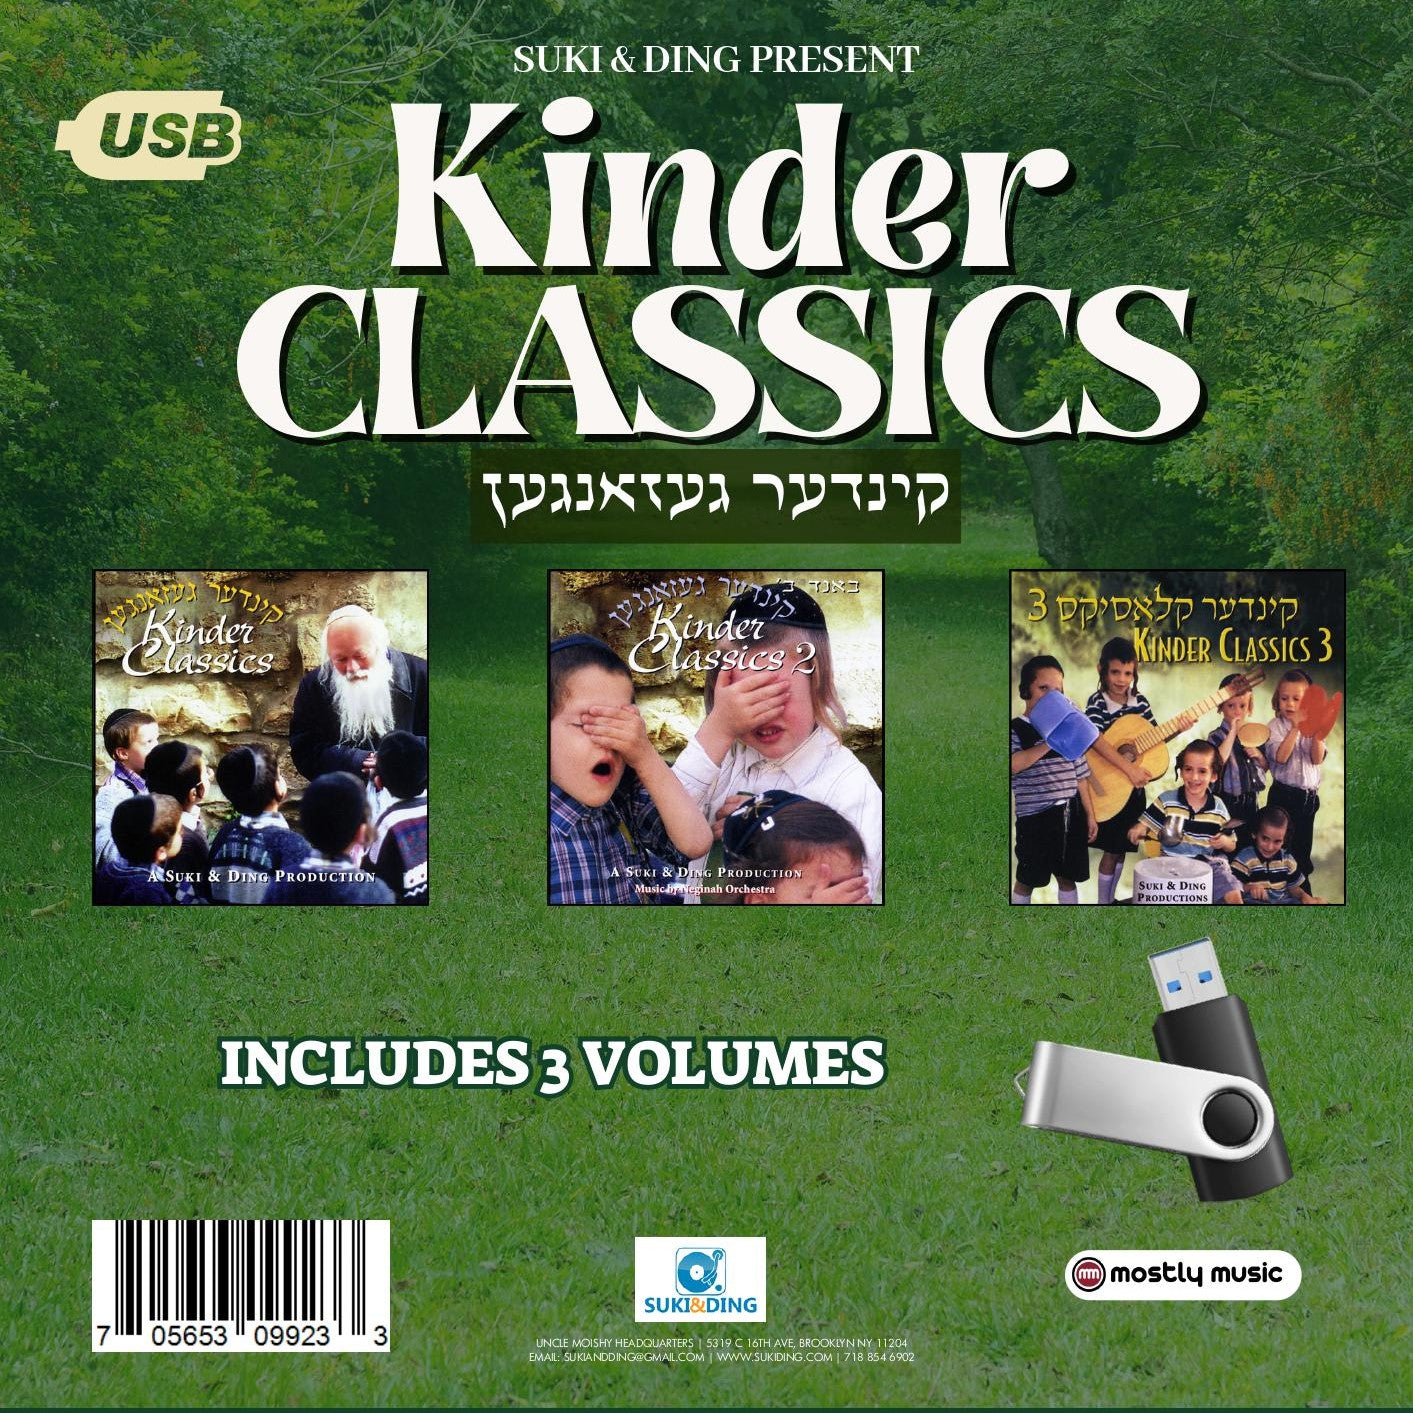 All Star - Kinder Classics 1-3 (USB)